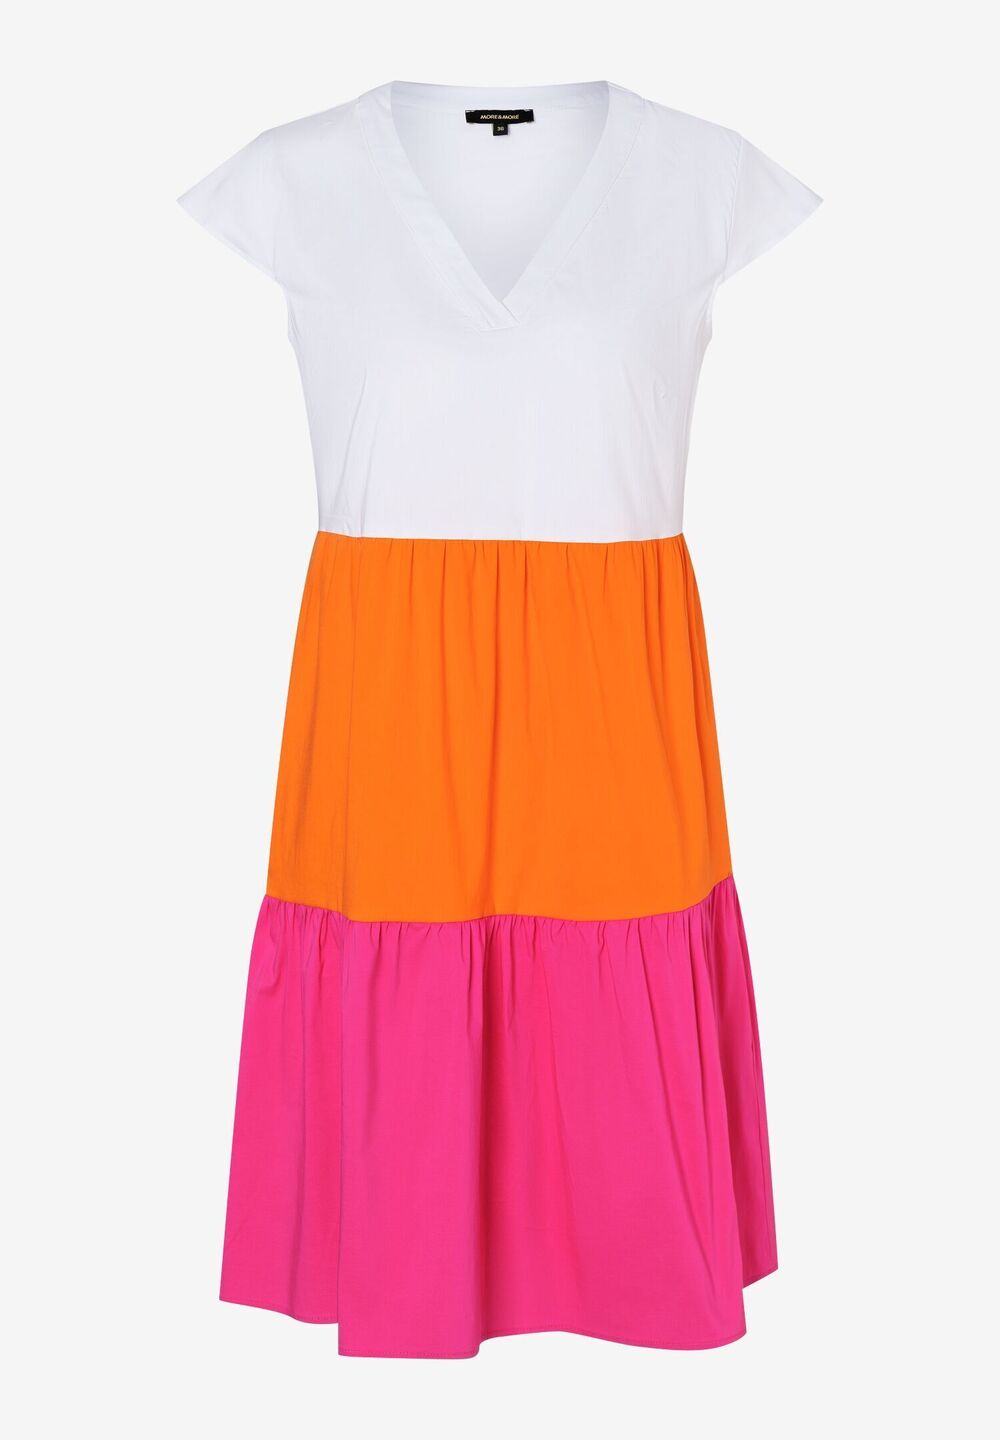 Tunikakleid, pink/orange, Sommer-Kollektion, pinkDetailansicht 1